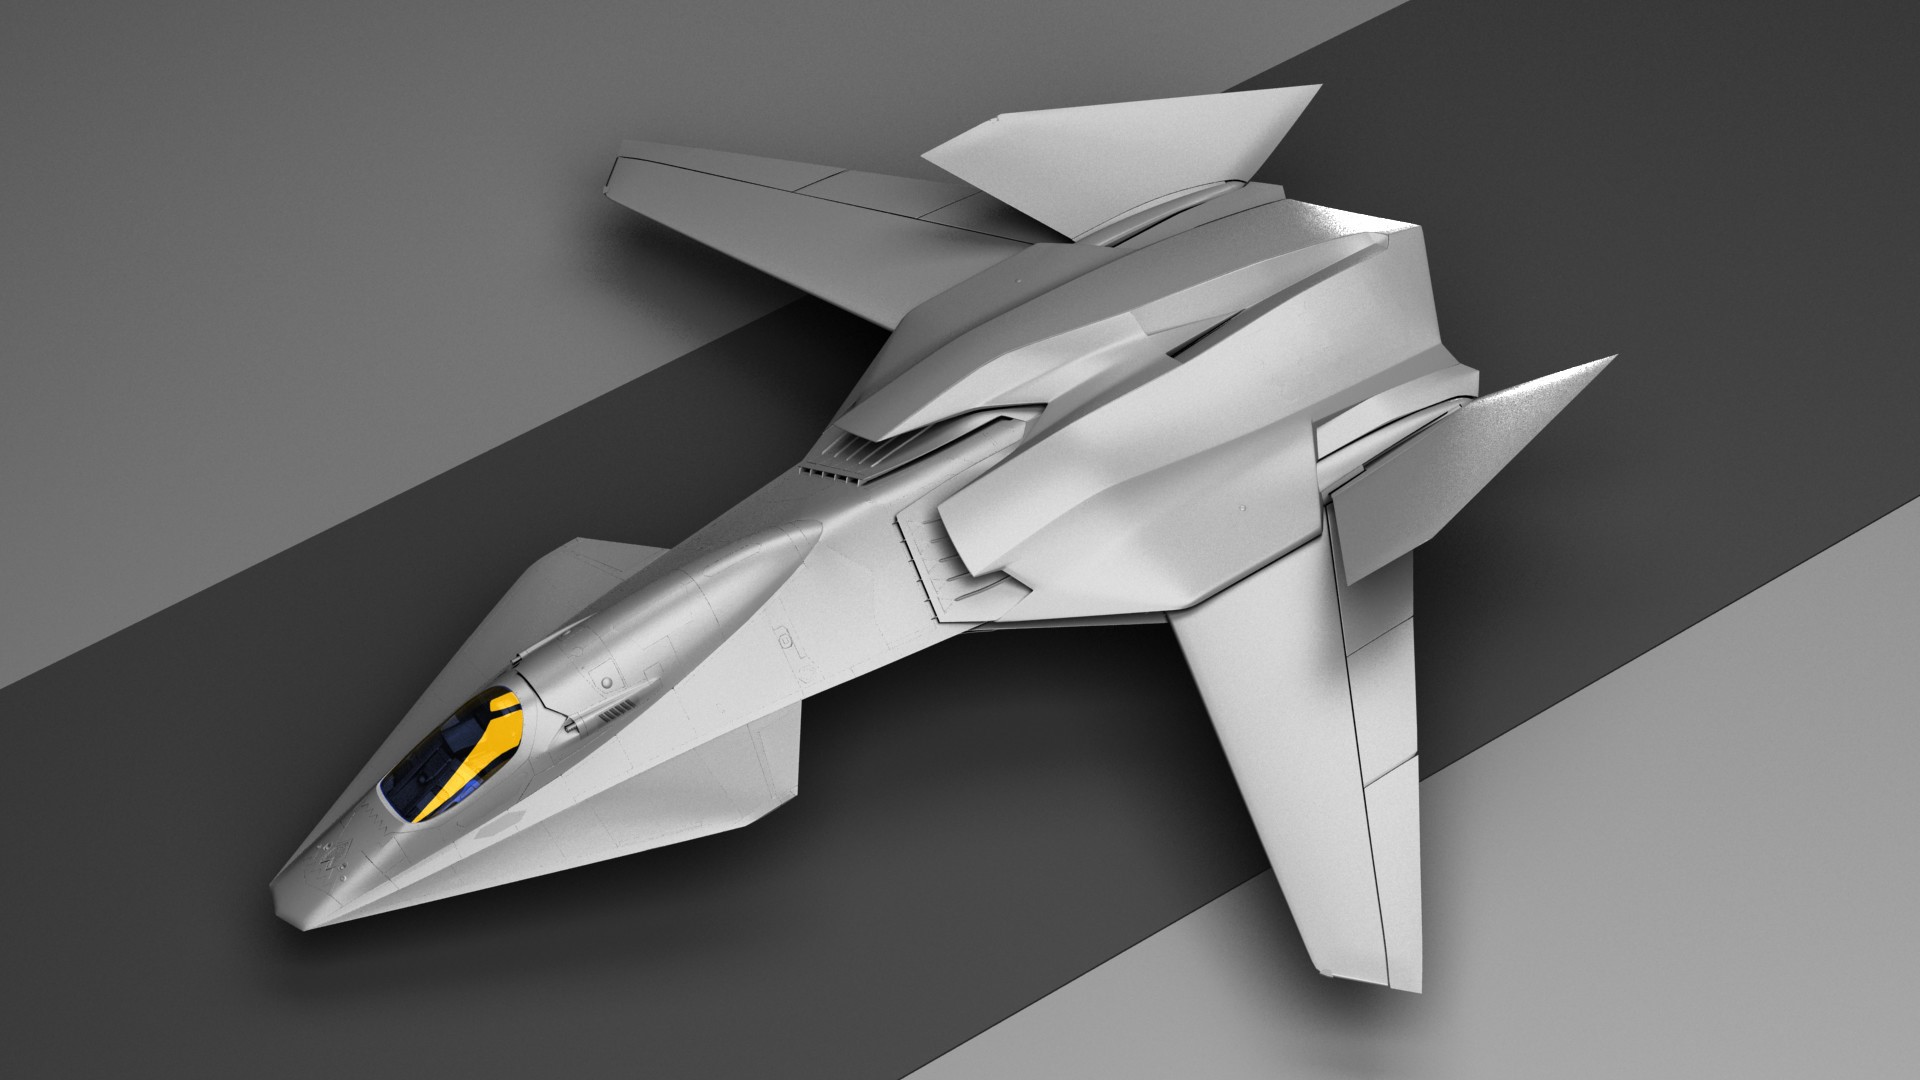 FA-37 Talon Stealth Fighter Jet